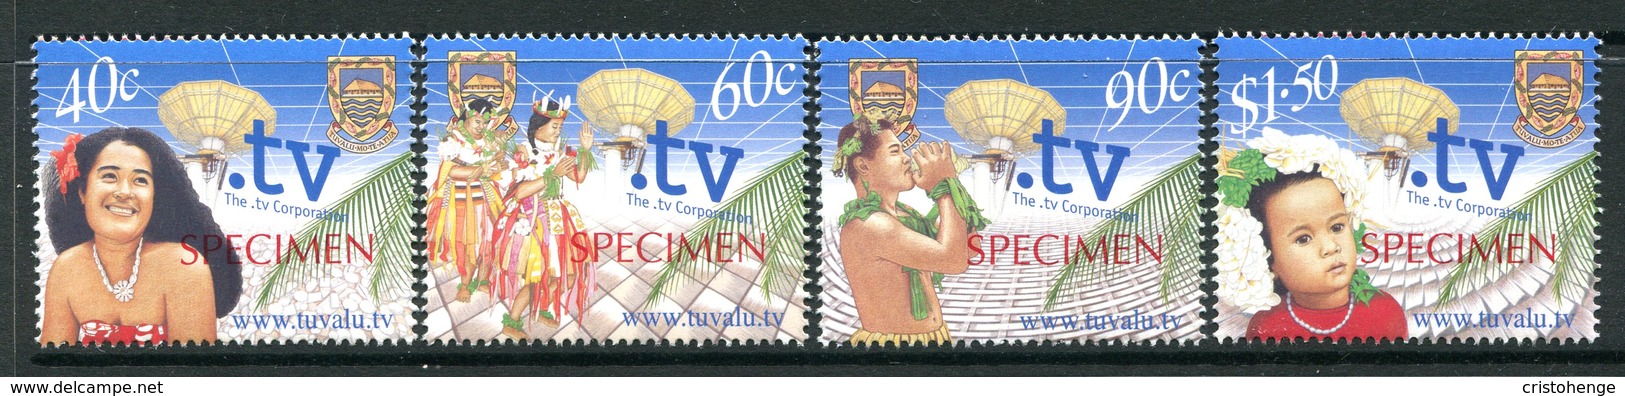 Tuvalu 2001 Inauguration Of .tv ISP - SPECIMEN - Set MNH (SG 1005-1008) - Tuvalu